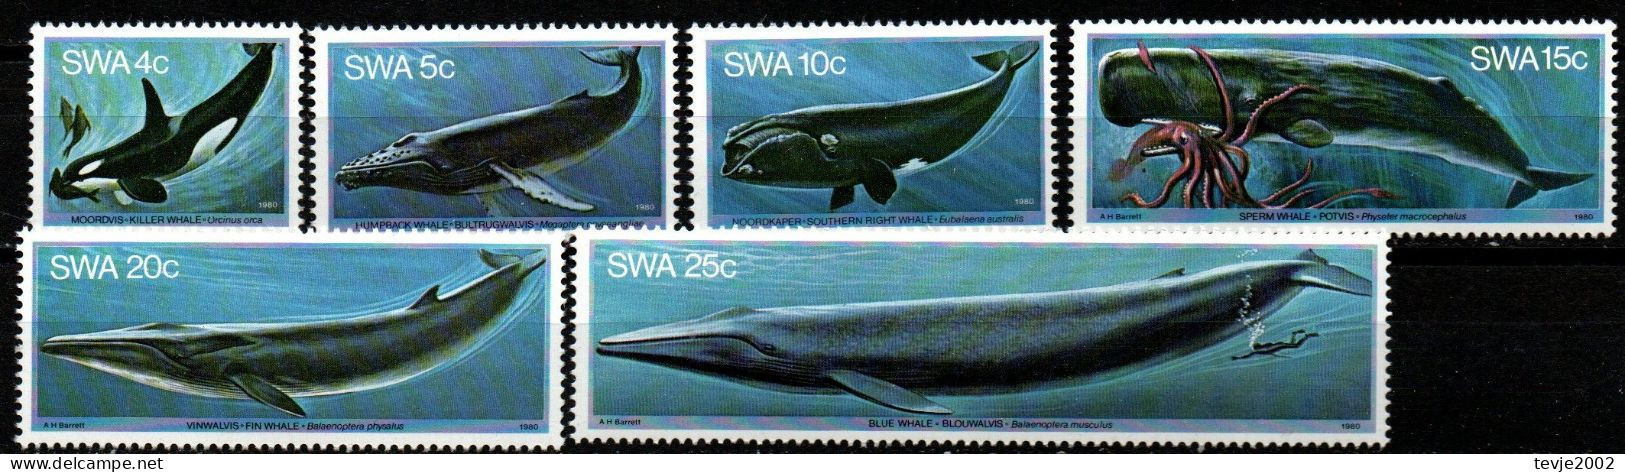 Südwestafrika 1980 - Mi.Nr. 466 - 471 - Postfrisch MNH - Tiere Animals Wale Whales - Walvissen